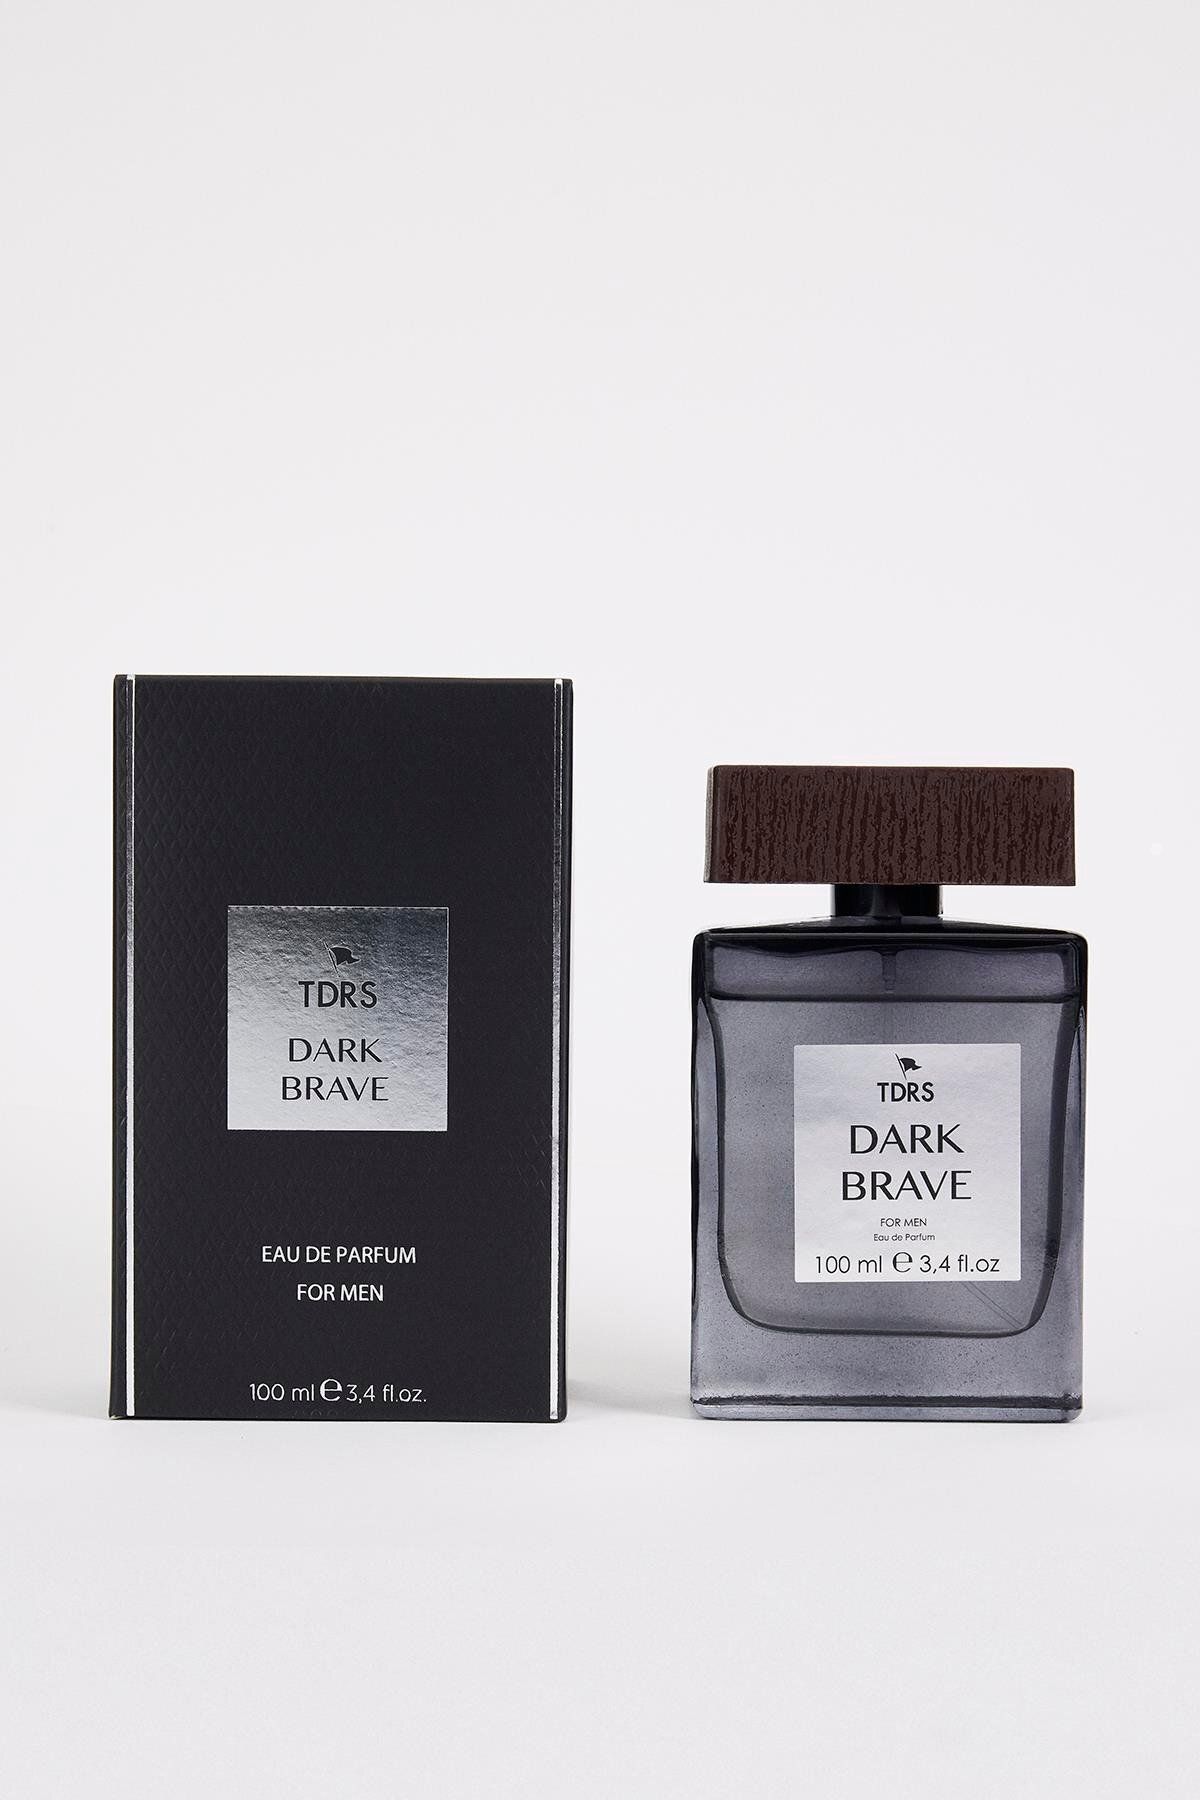 TDRS Dark Brave Tarçın Özel Seri Uzun Süre Kalıcı 100 ml Edp Erkek Parfüm